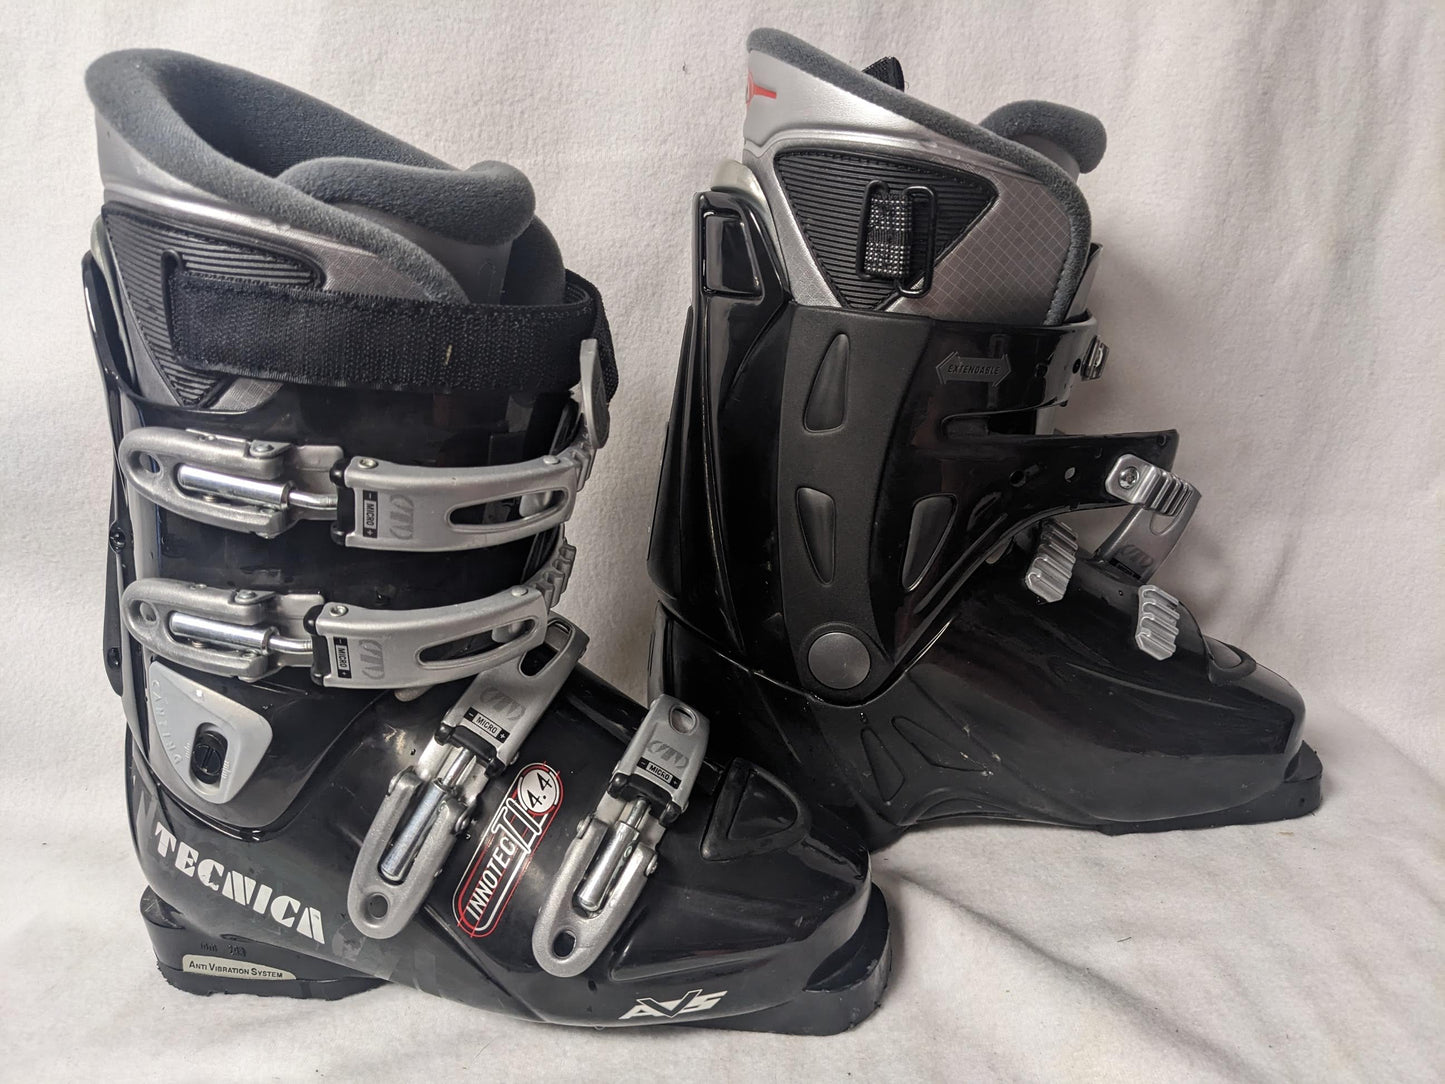 Tecnica Innotec TI 4.4 Ski Boots Size 24.5 Color Black Condition Used